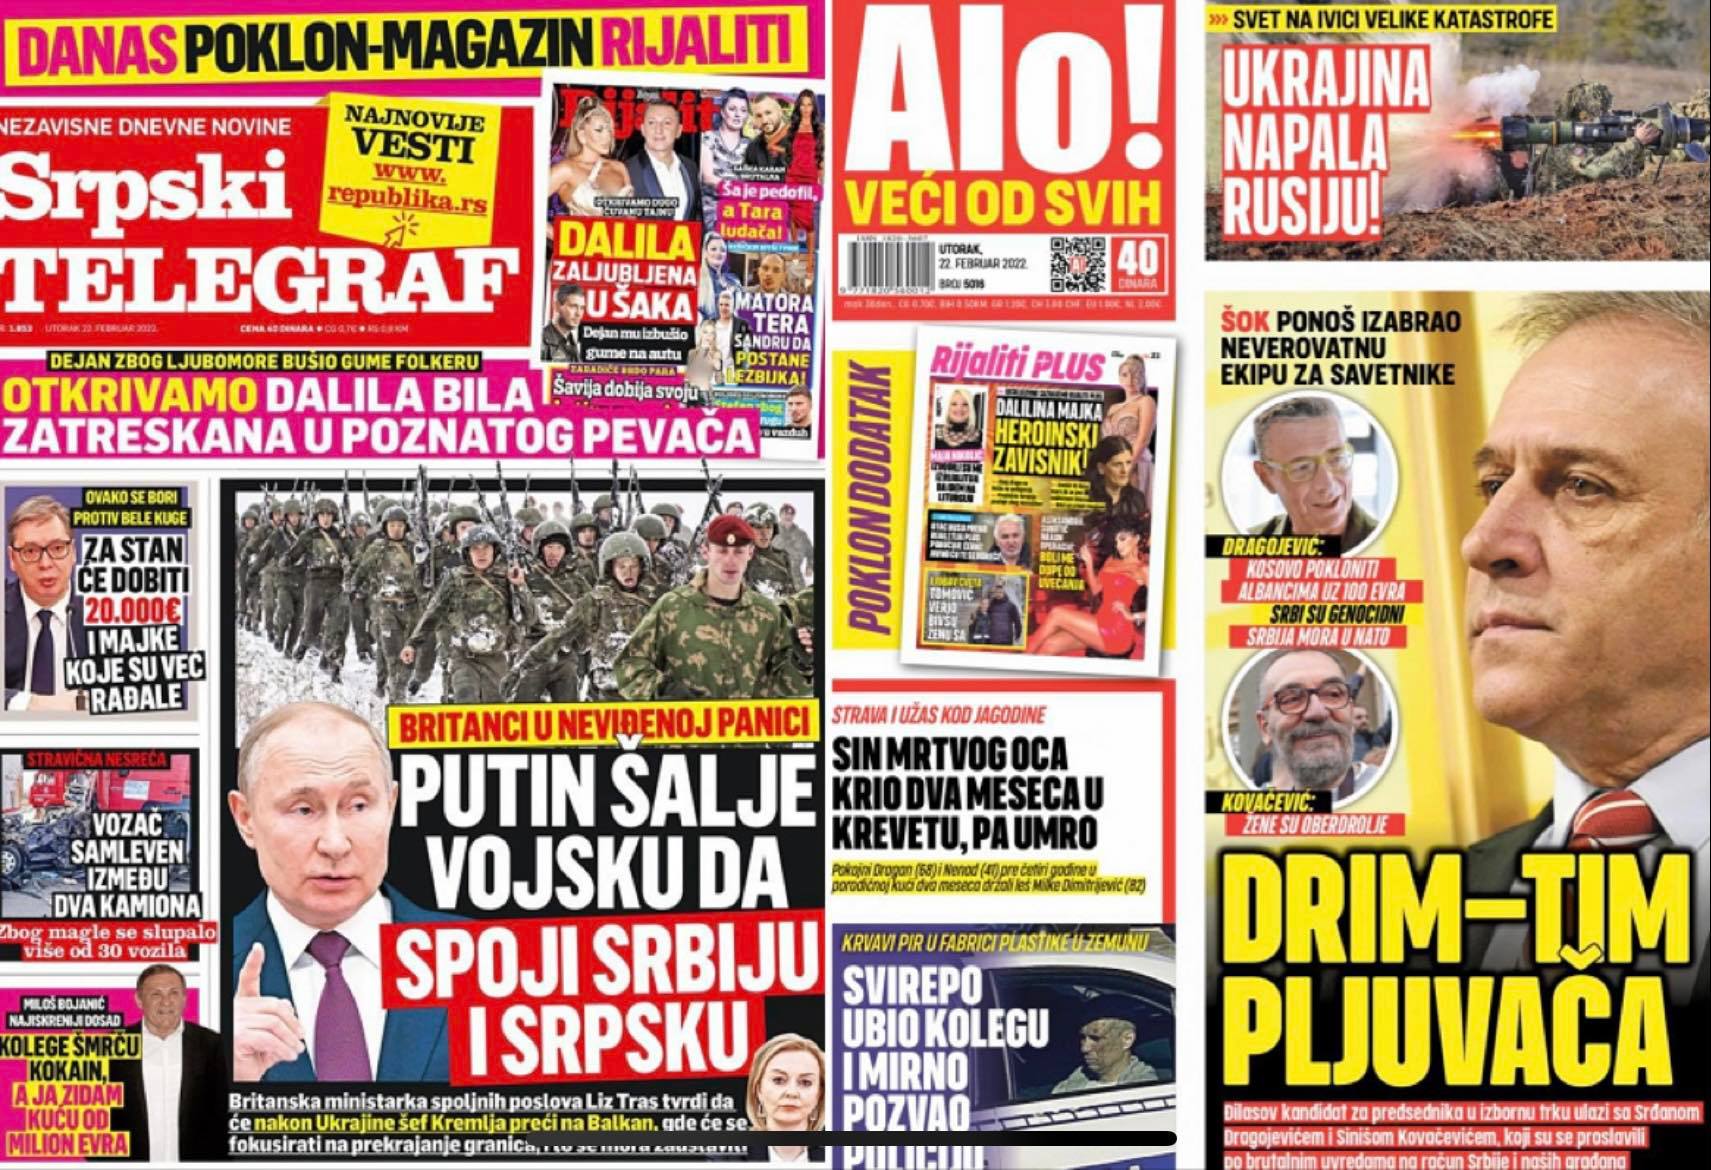 Az Alo című bulvárlap szintén azt közölte, hogy Ukrajna megtámadta Oroszországot. A Srpski telegraf pedig arról ír, hogy Vlagyimir Putyin egyesítheti Szerbiát és a boszniai Szerb Köztársaságot